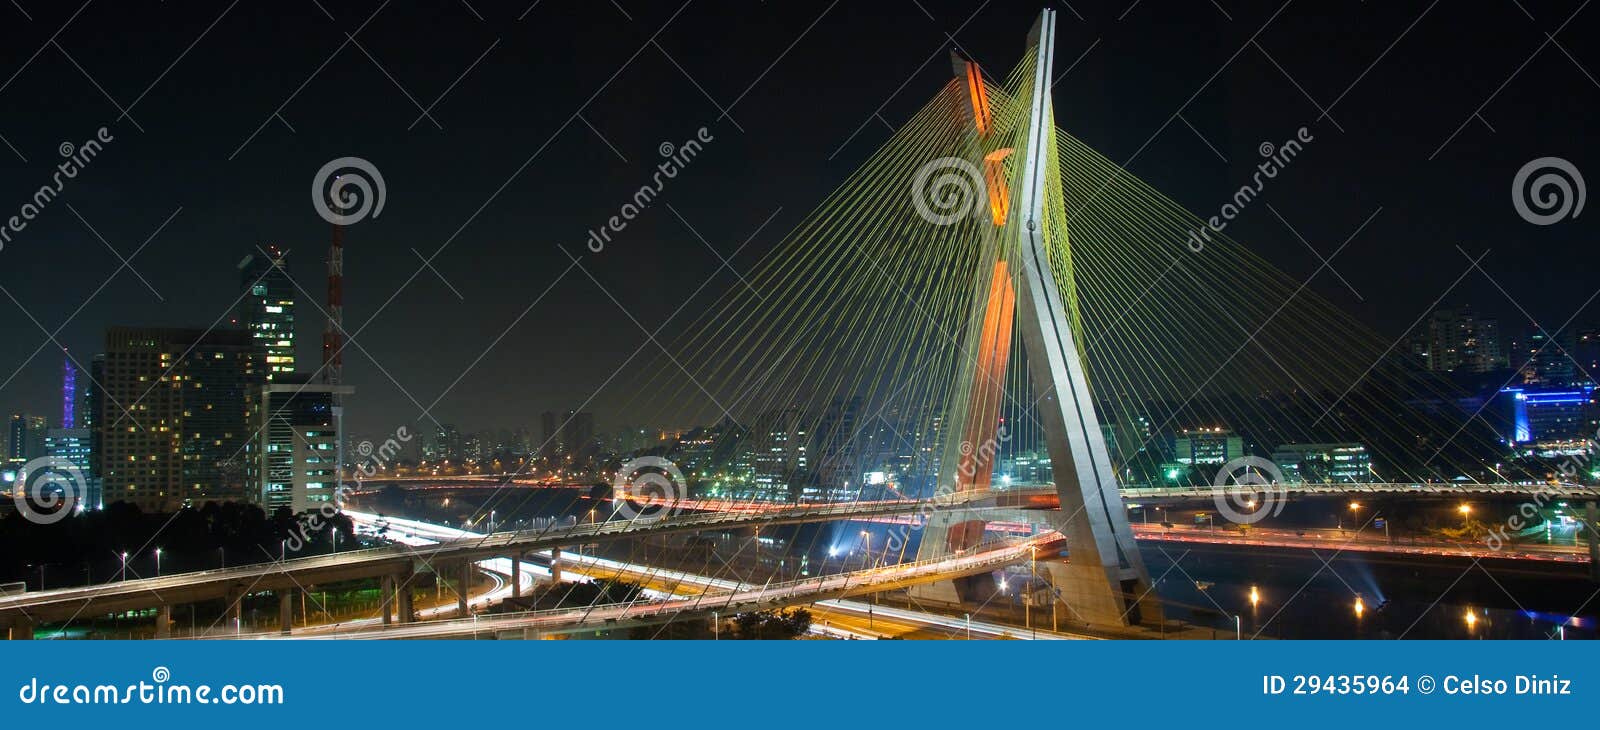 beautiful bridge in sao paulo